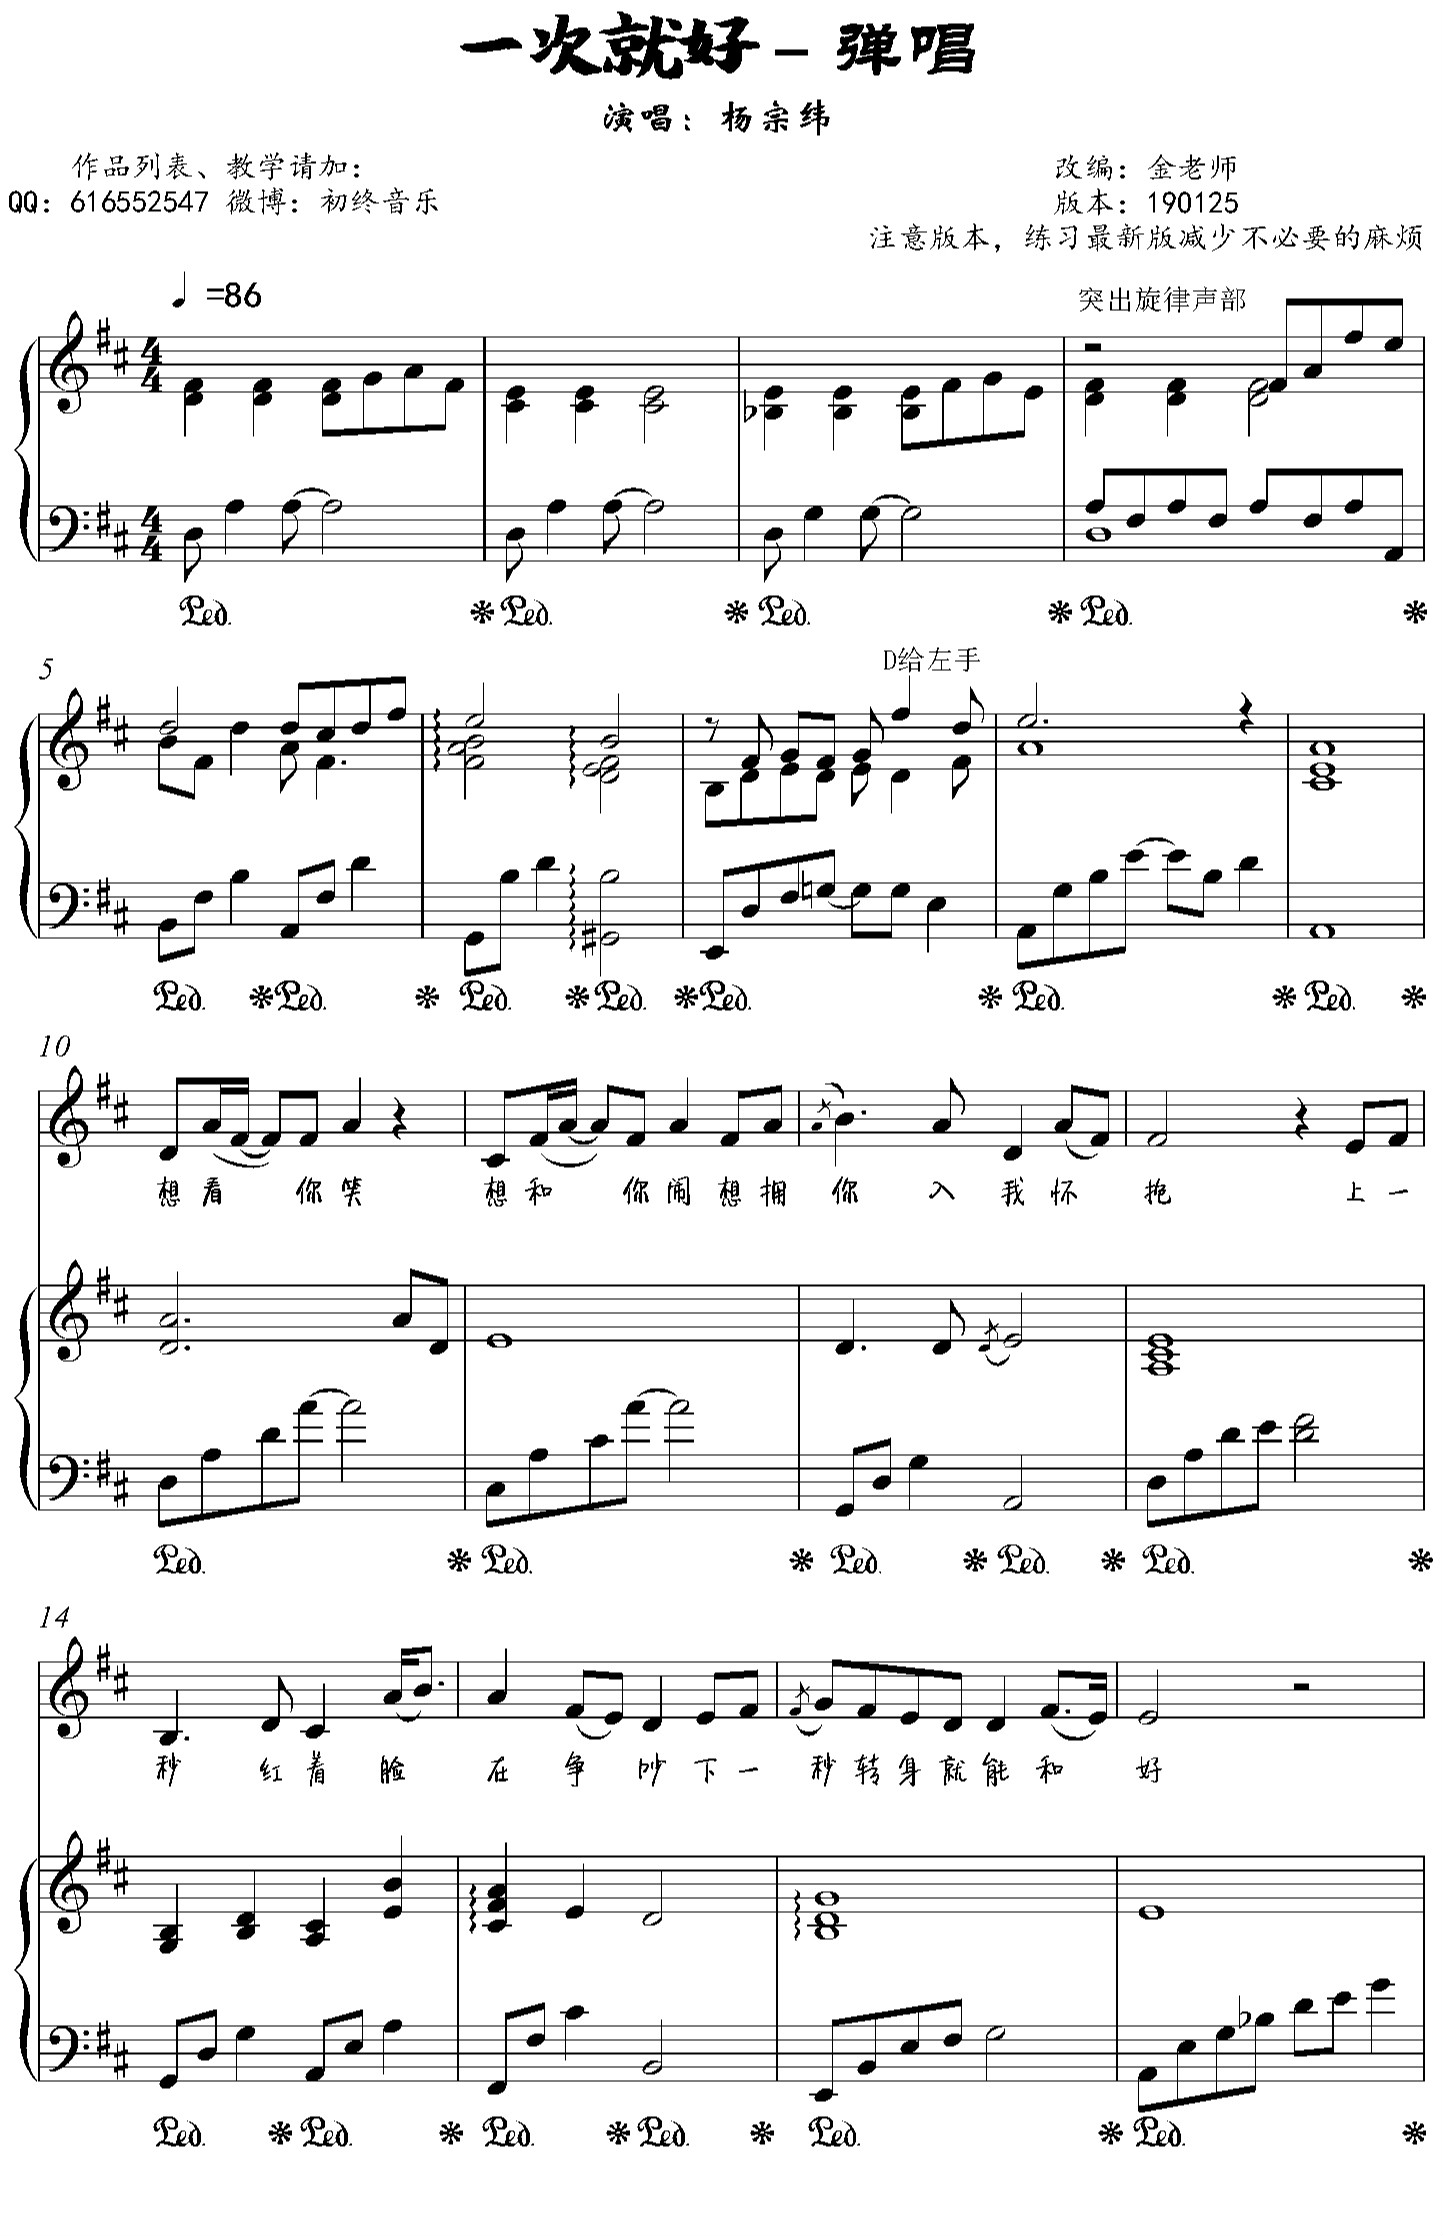 一次就好钢琴谱-杨宗纬演唱-金老师弹唱1901252